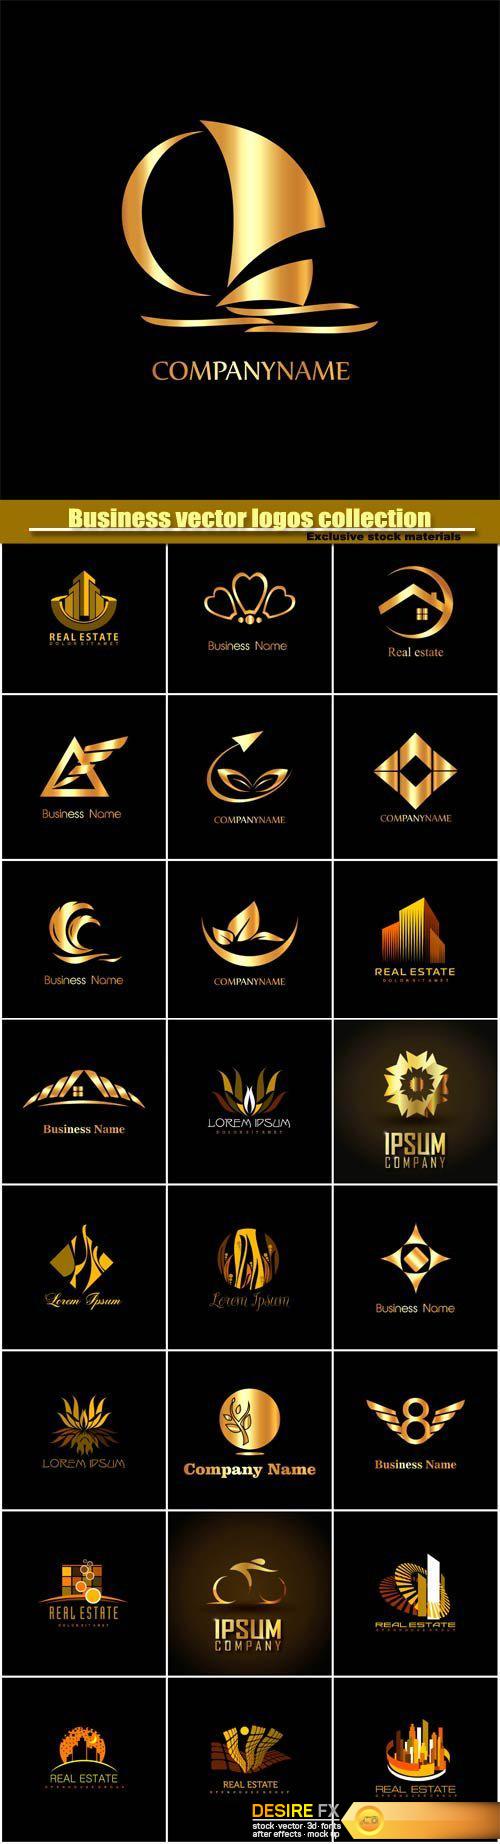 Business vector logos templates, creative gold figure icon